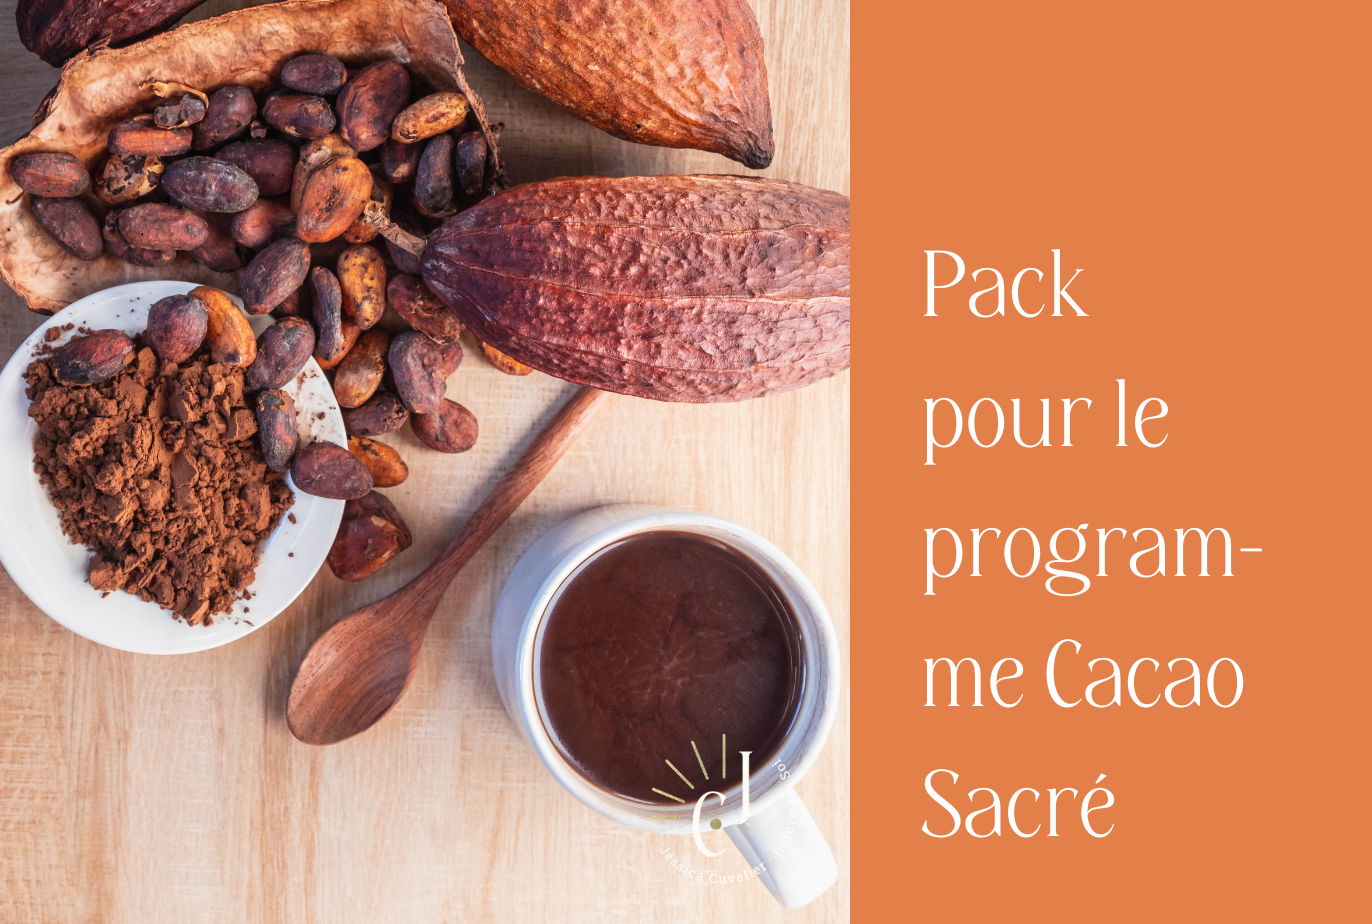 Pack de cacao pour le programme Cacao Sacrée